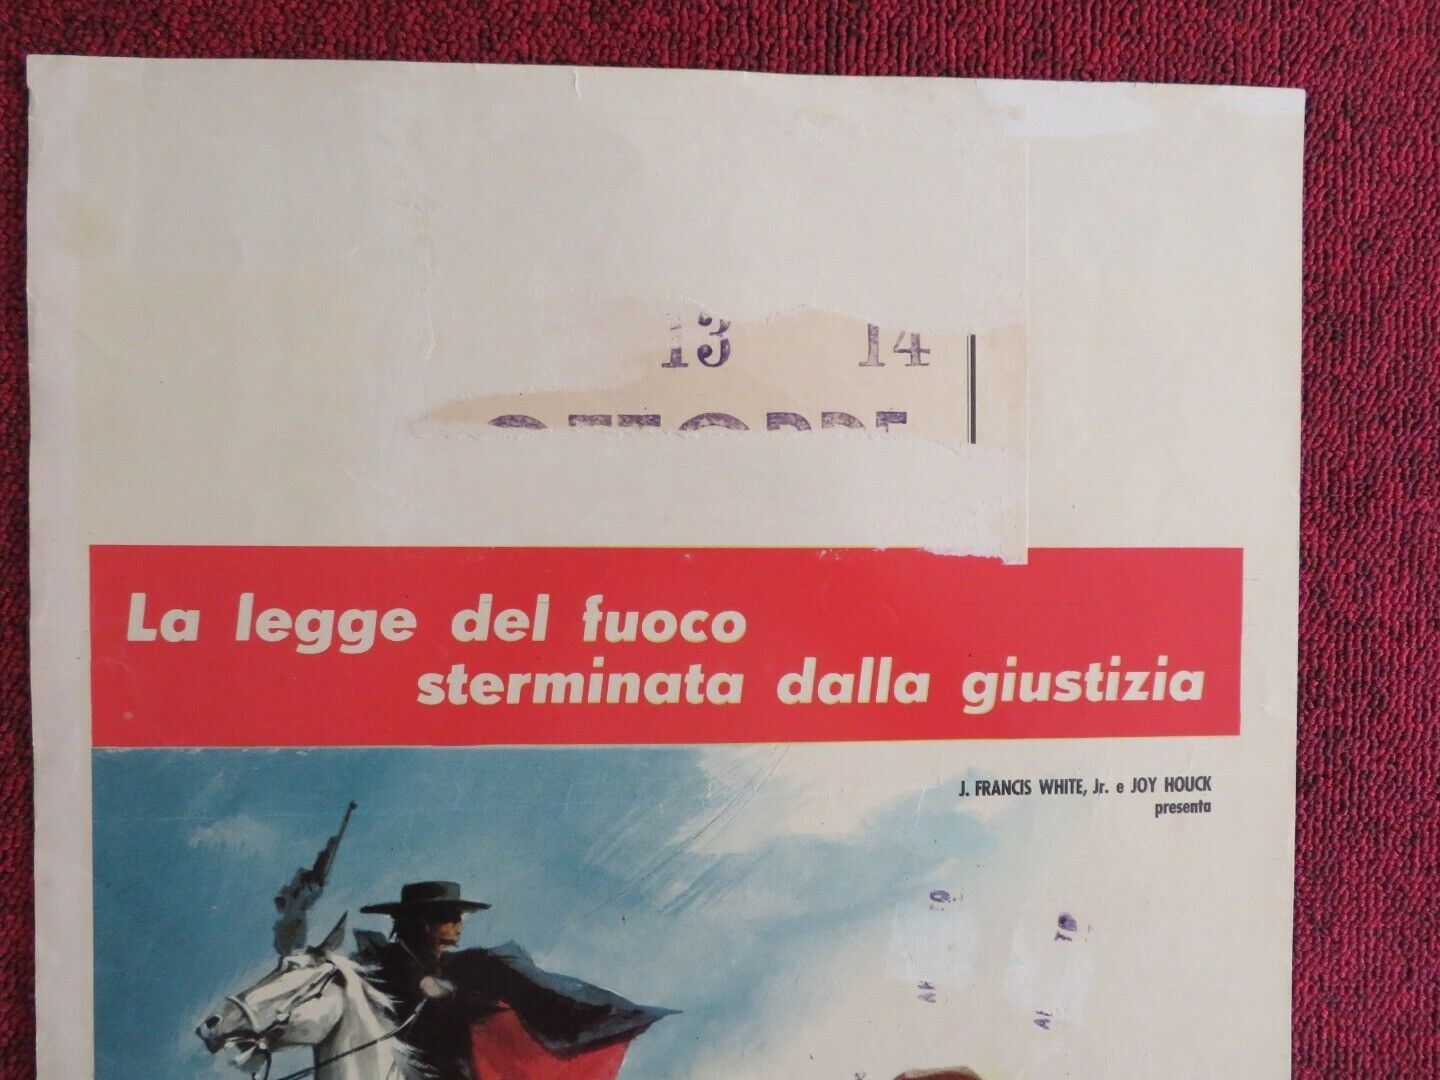 LE PISTOLE DI ZORRO/ King of the Bullwhip ITALIAN LOCANDINA (28"x13") POSTER '63